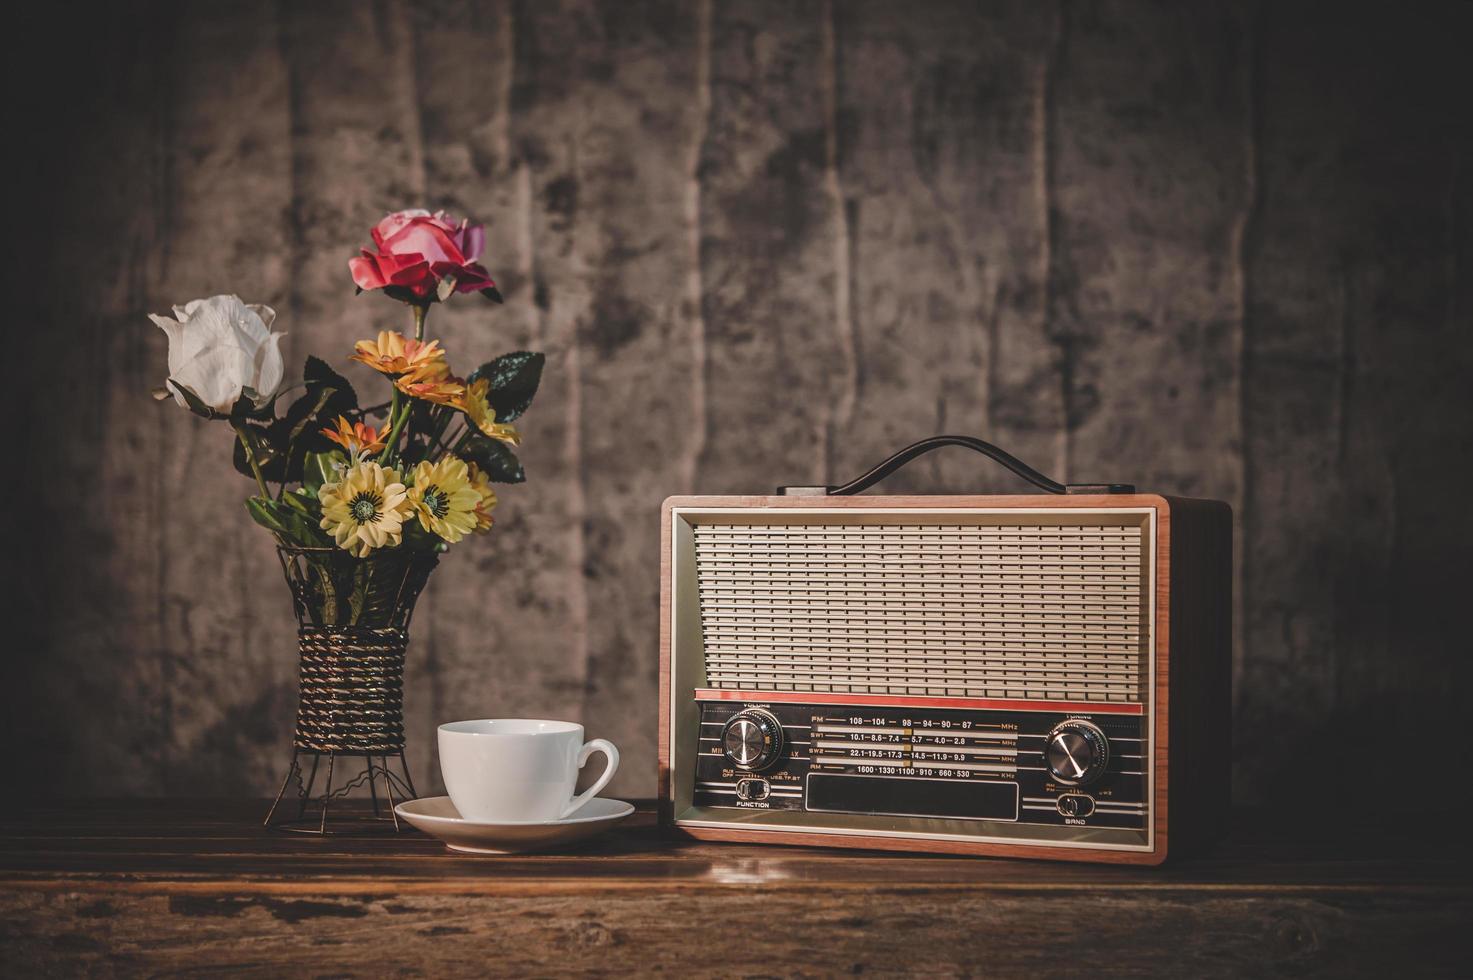 receptor de rádio retrô natureza morta com xícara de café e vasos de flores foto